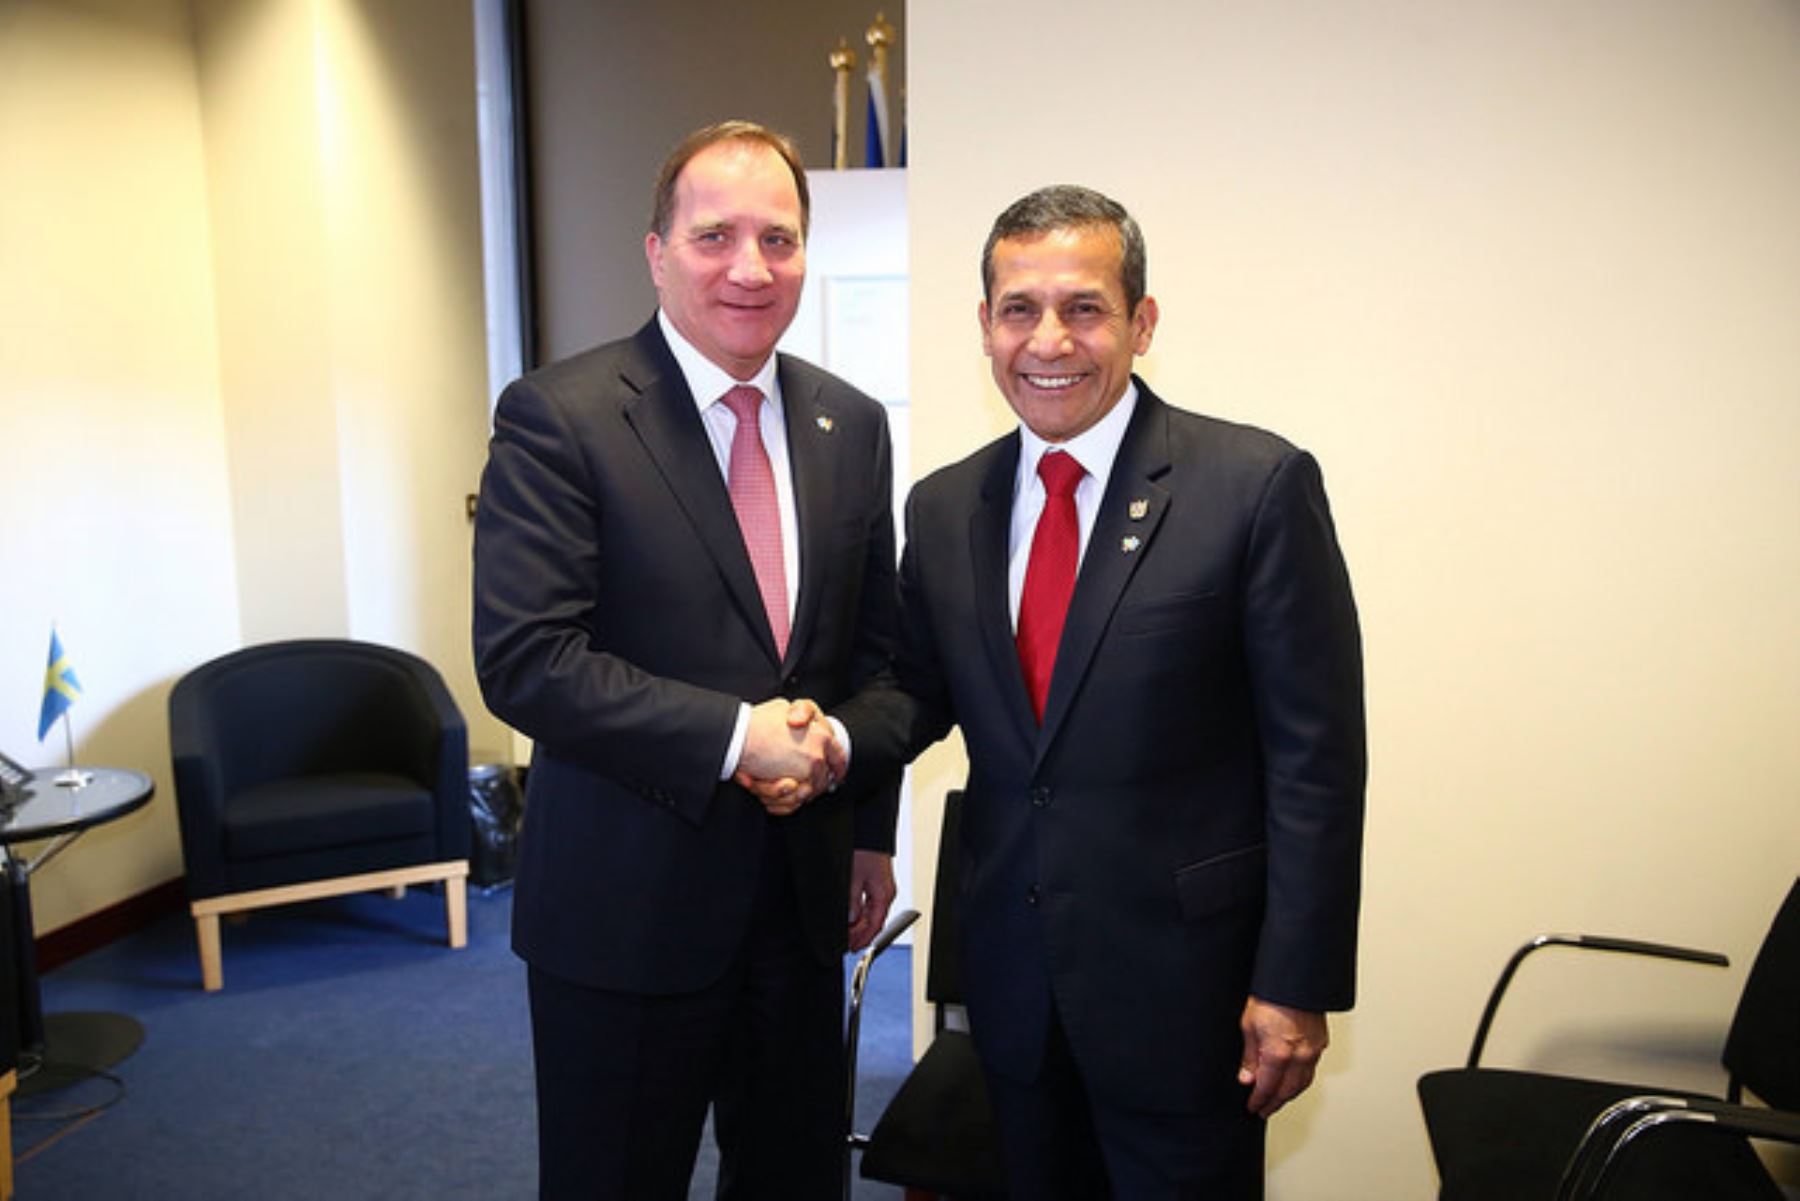 Primer Ministro de Suecia, Stefan Löfven saluda el Presidente Ollanta Humala durante encuentro. Foto: Presidencia.